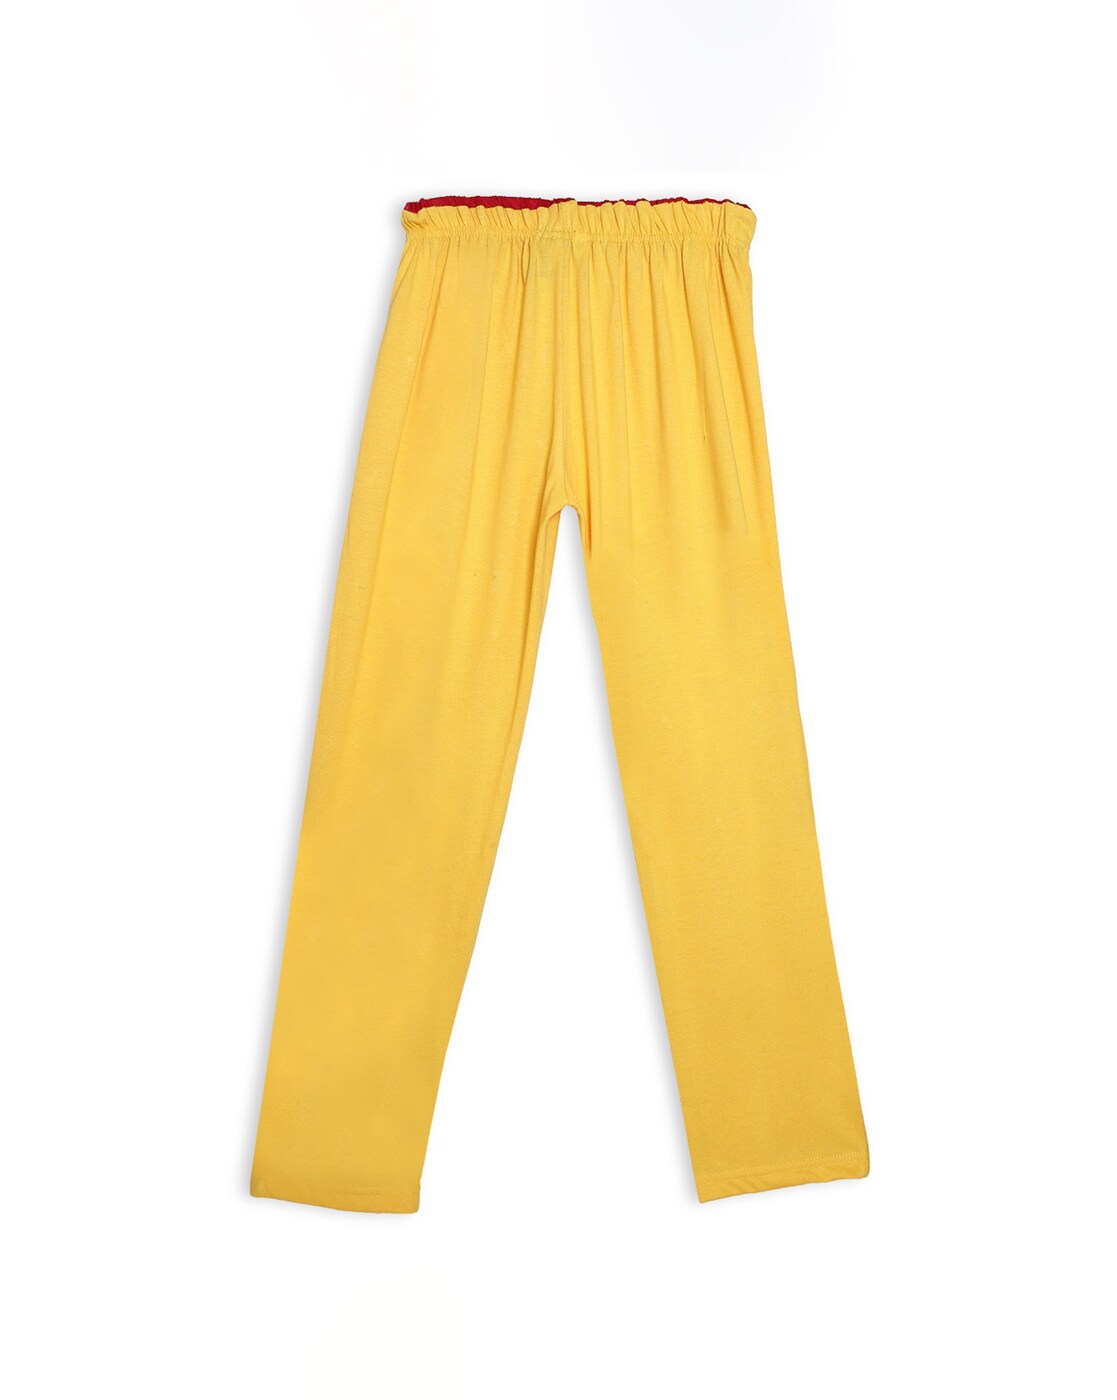 Cutiekins Regular Fit Girls Yellow Cotton Blend Trousers